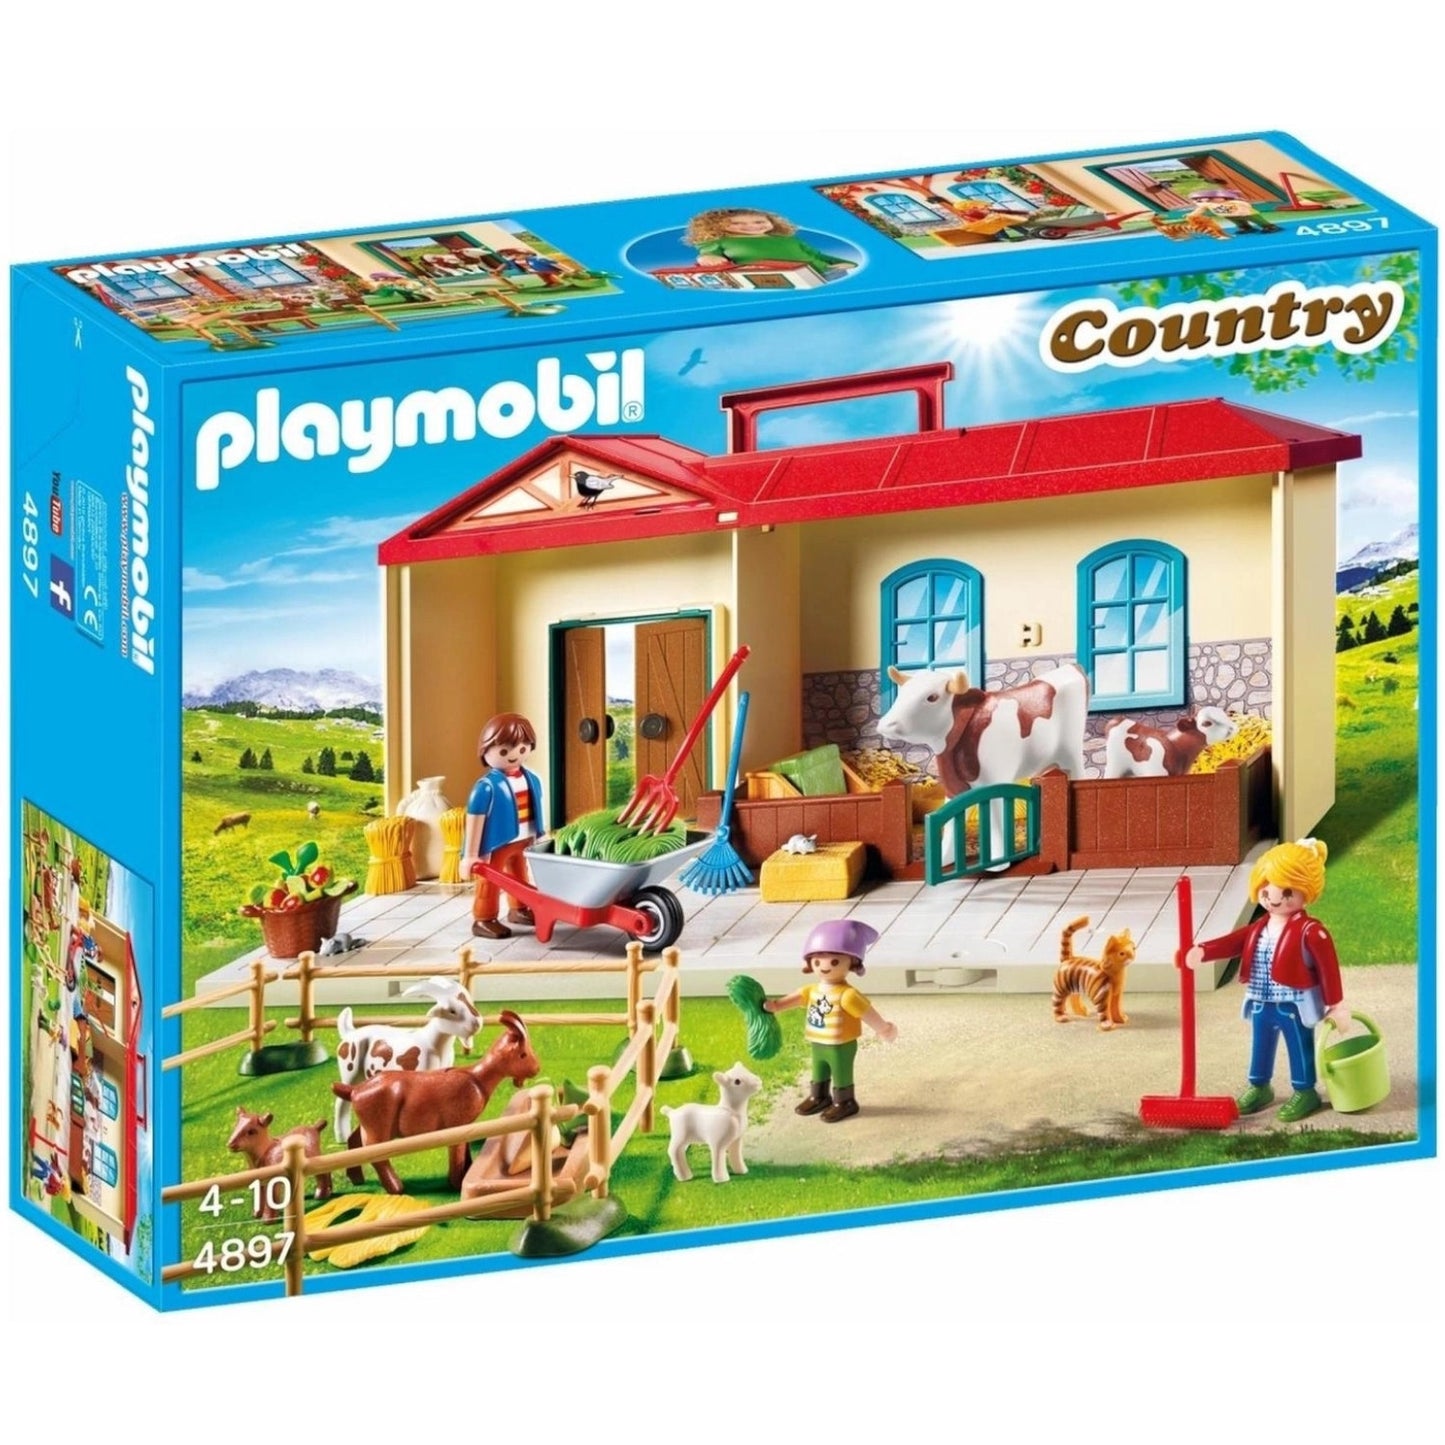 Playmobil Country Take Along Farm